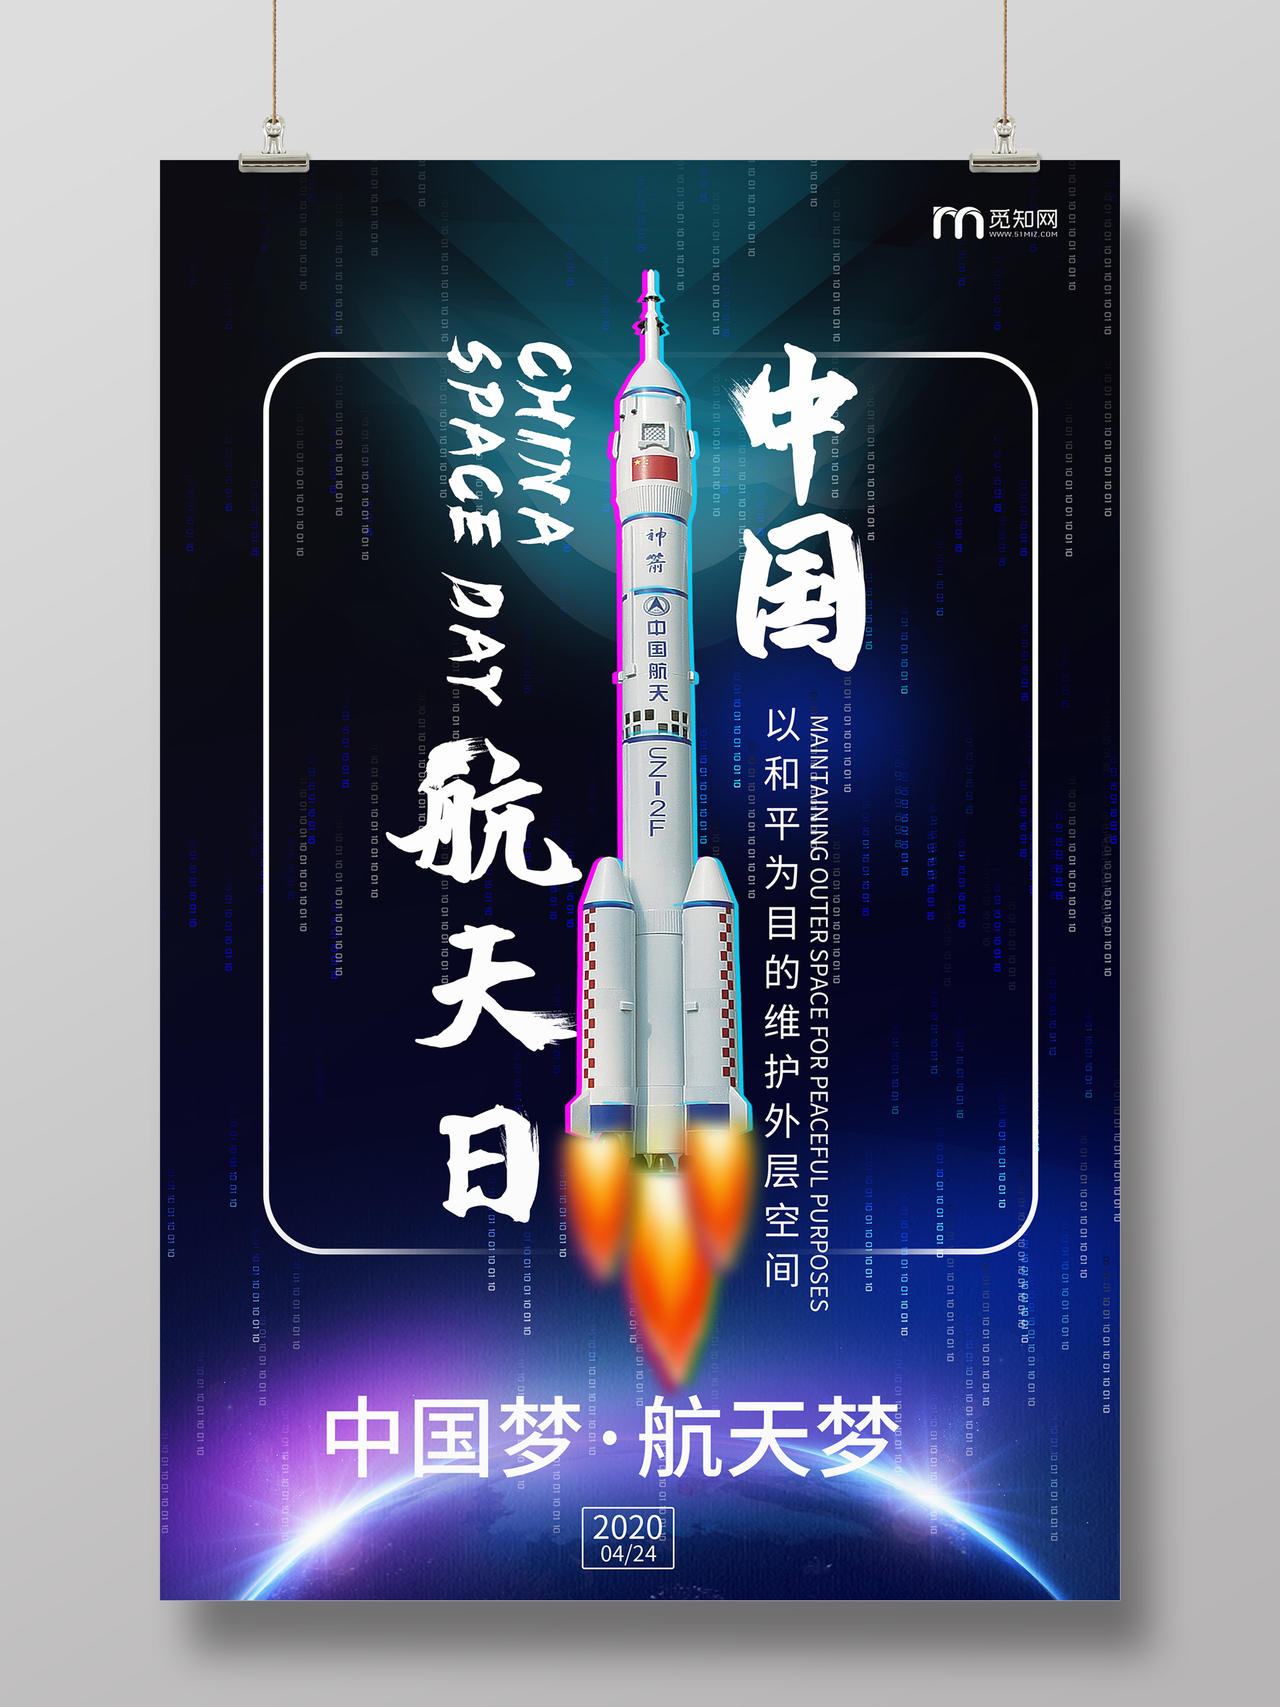 紫色大气抖音风格中国航天日海报设计